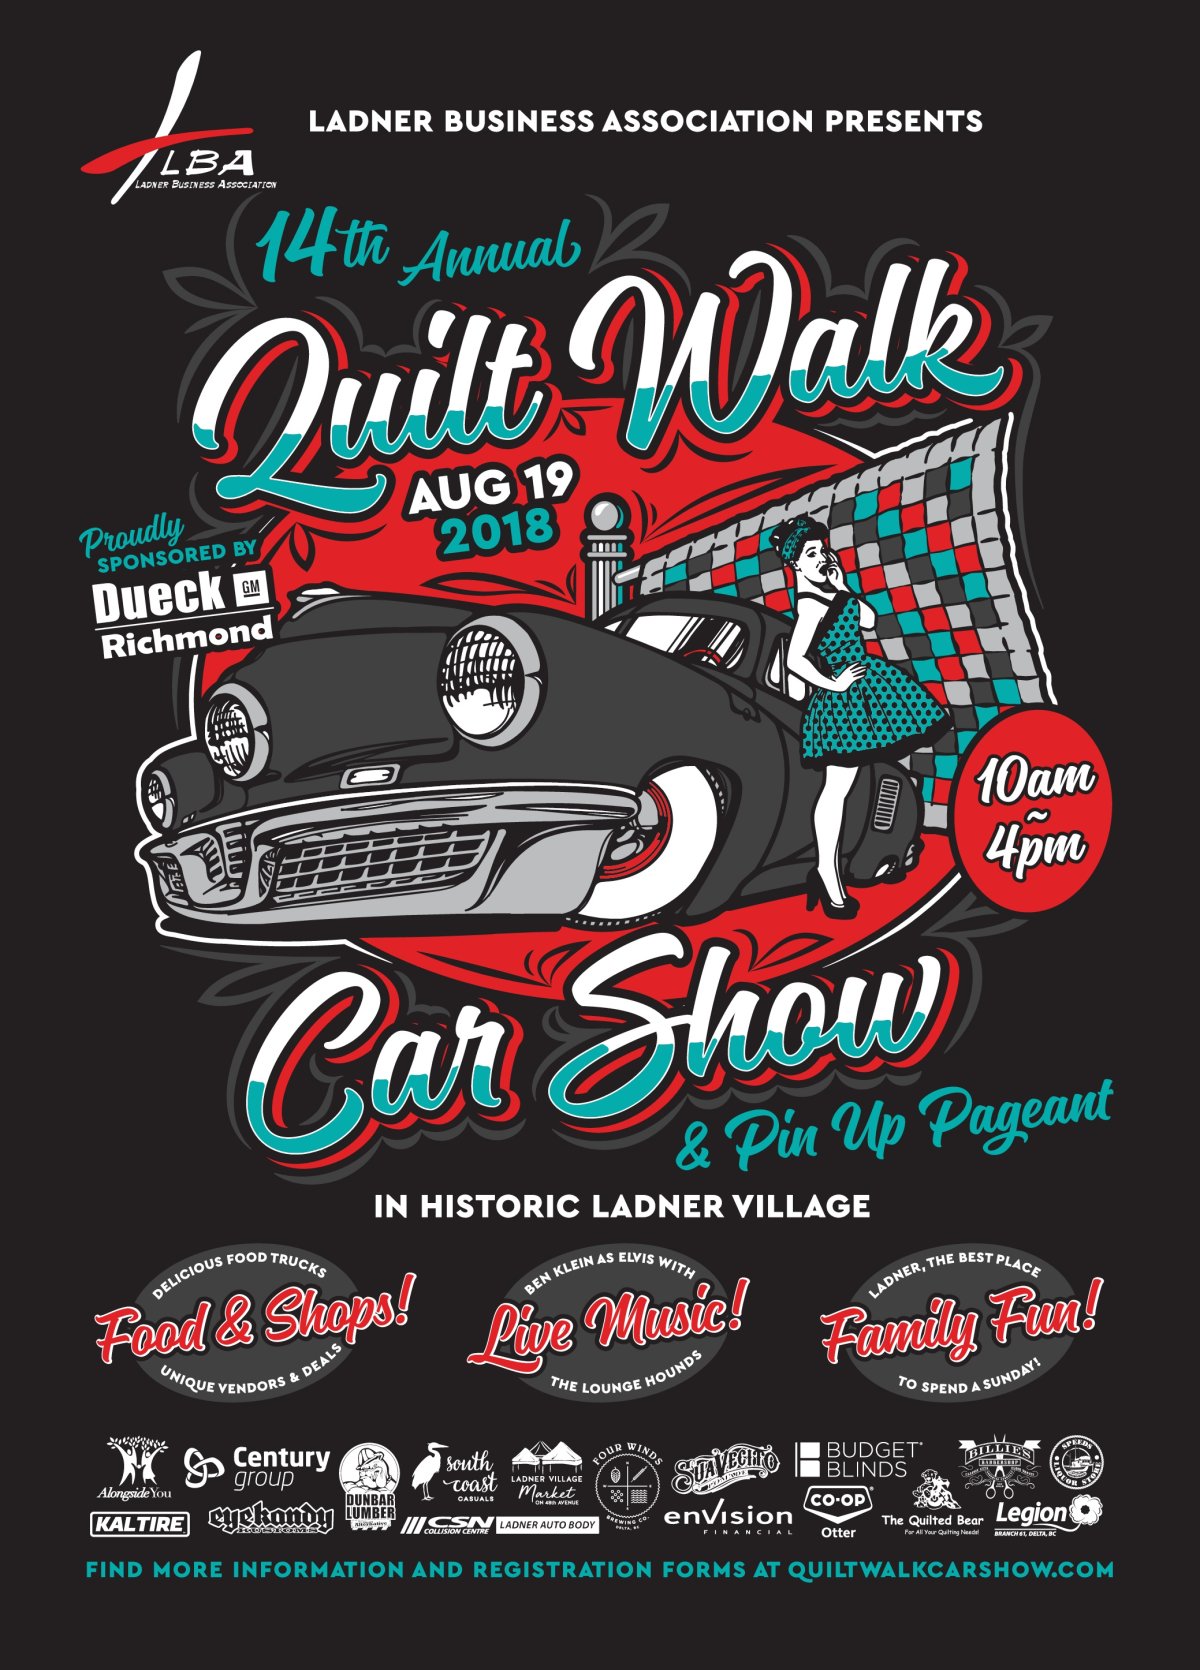 Ladner Quilt Walk & Car Show - image